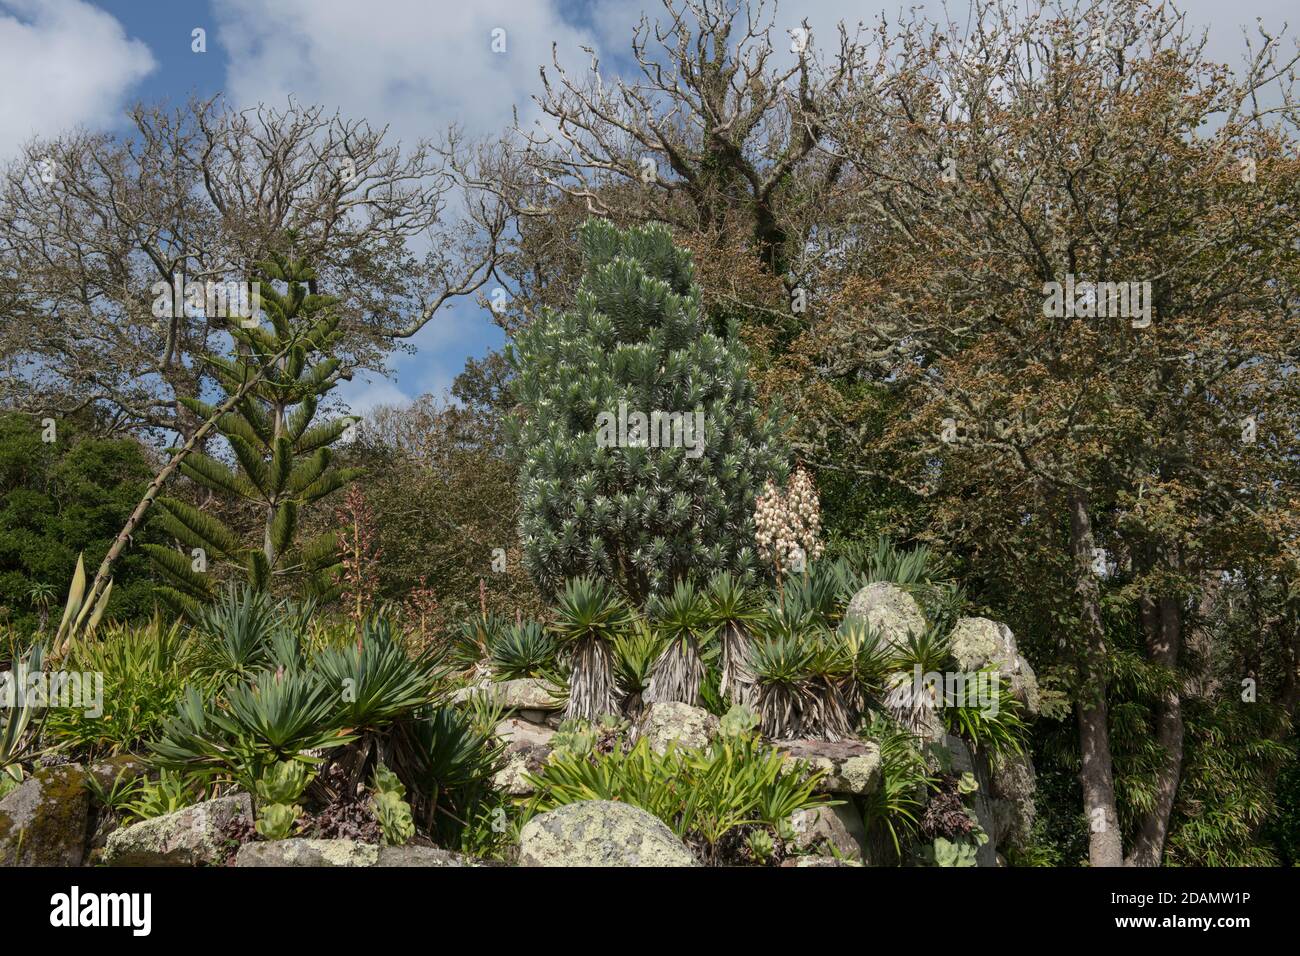 Steingarten mit Silberbaum, blühende Yucca-Pflanze, Norfolk Island Pine und Succulent Palms auf der Insel Tresco auf den Inseln von Scilly, England Stockfoto